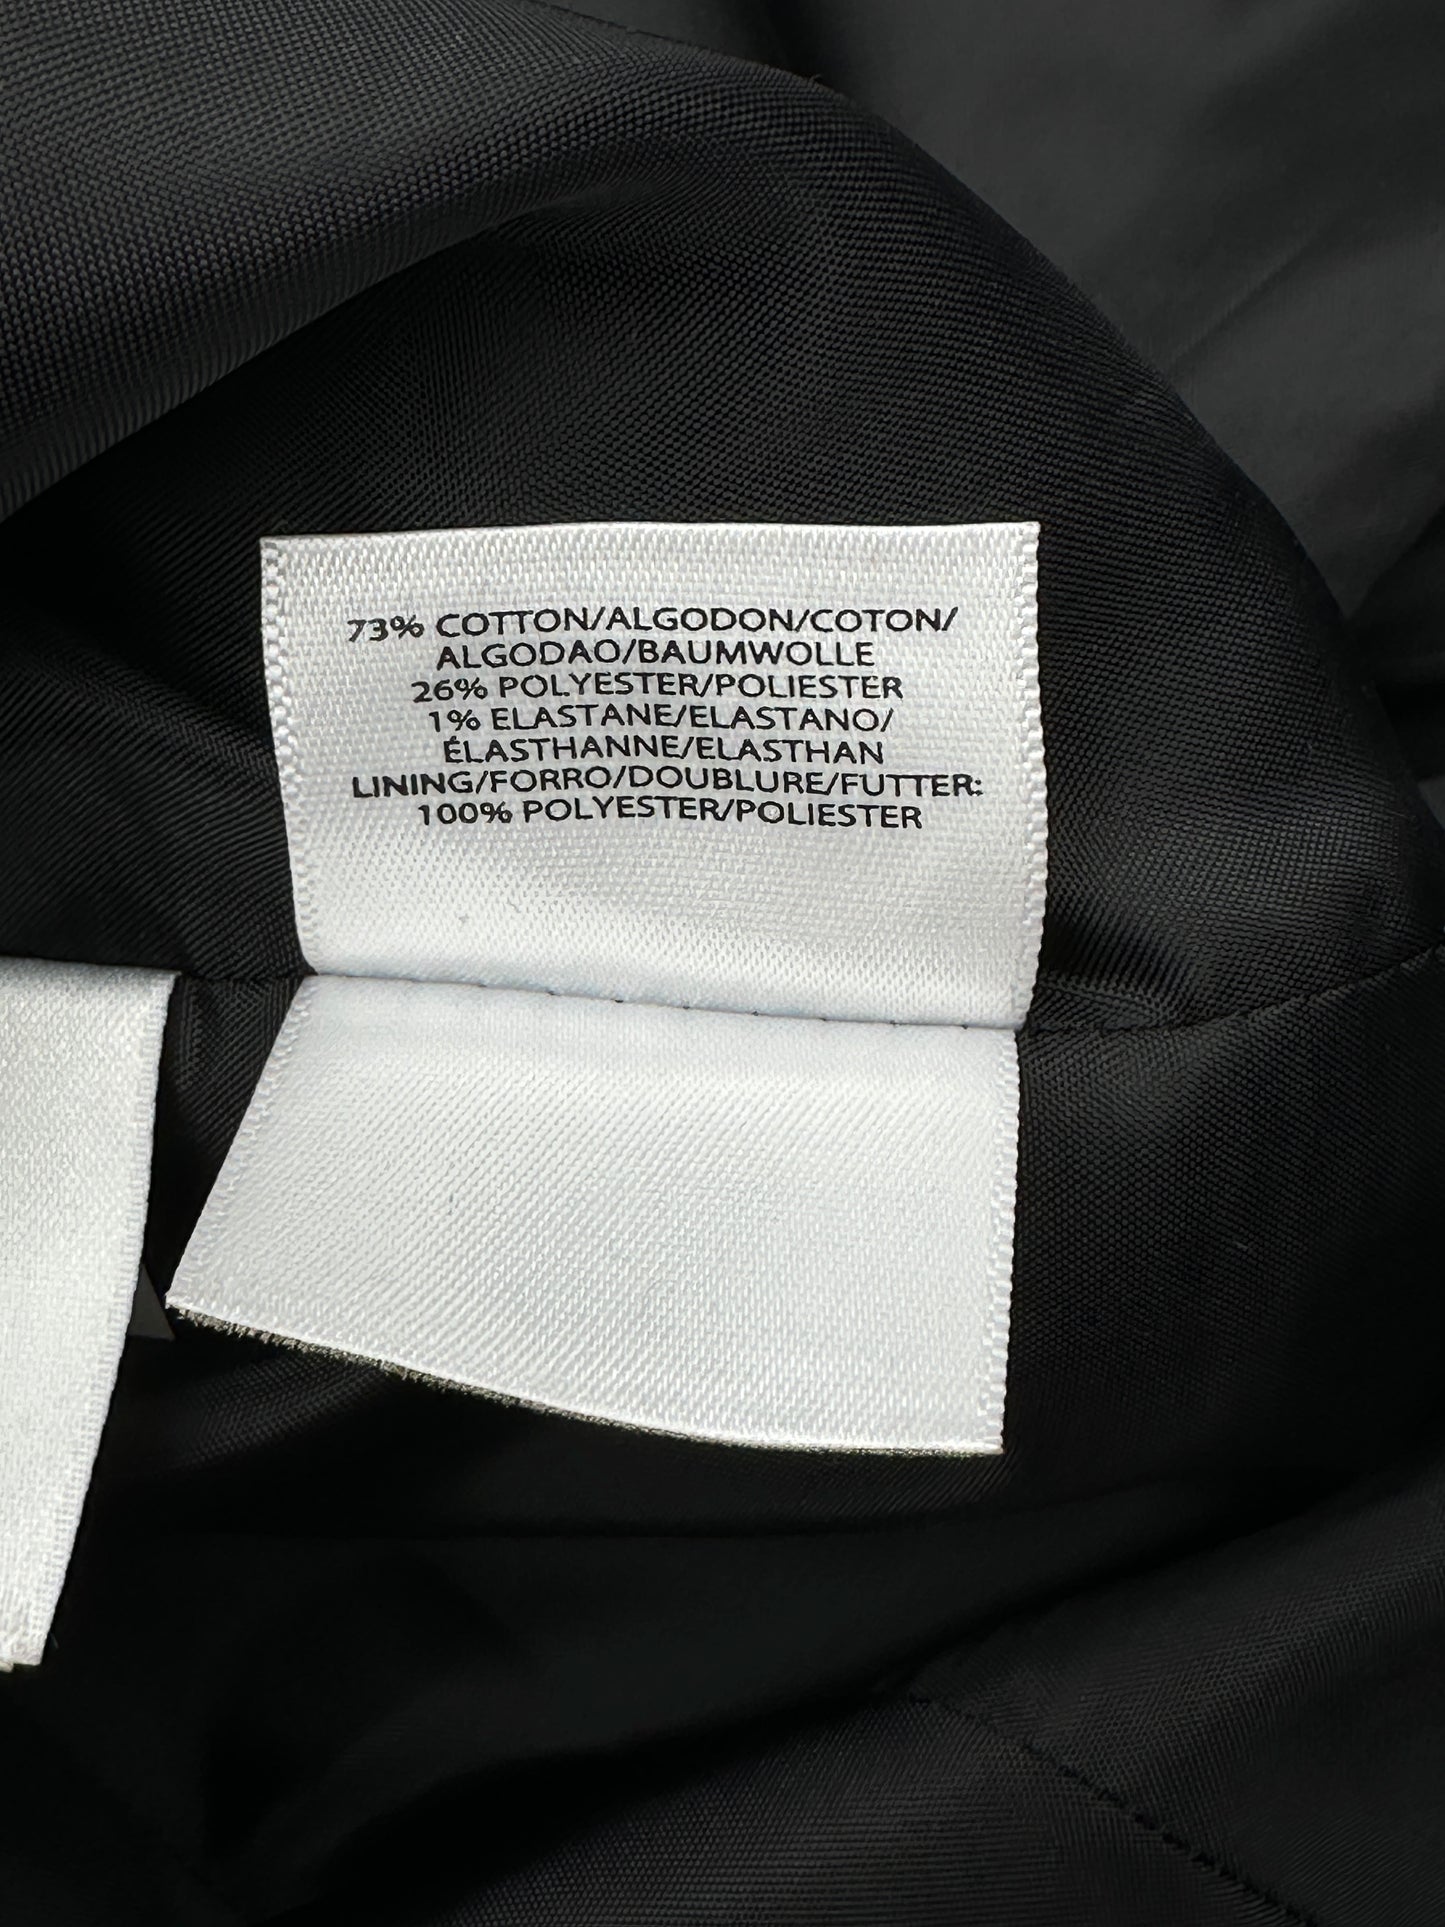 Nine West Size 10 Black Denim Blazer Jacket